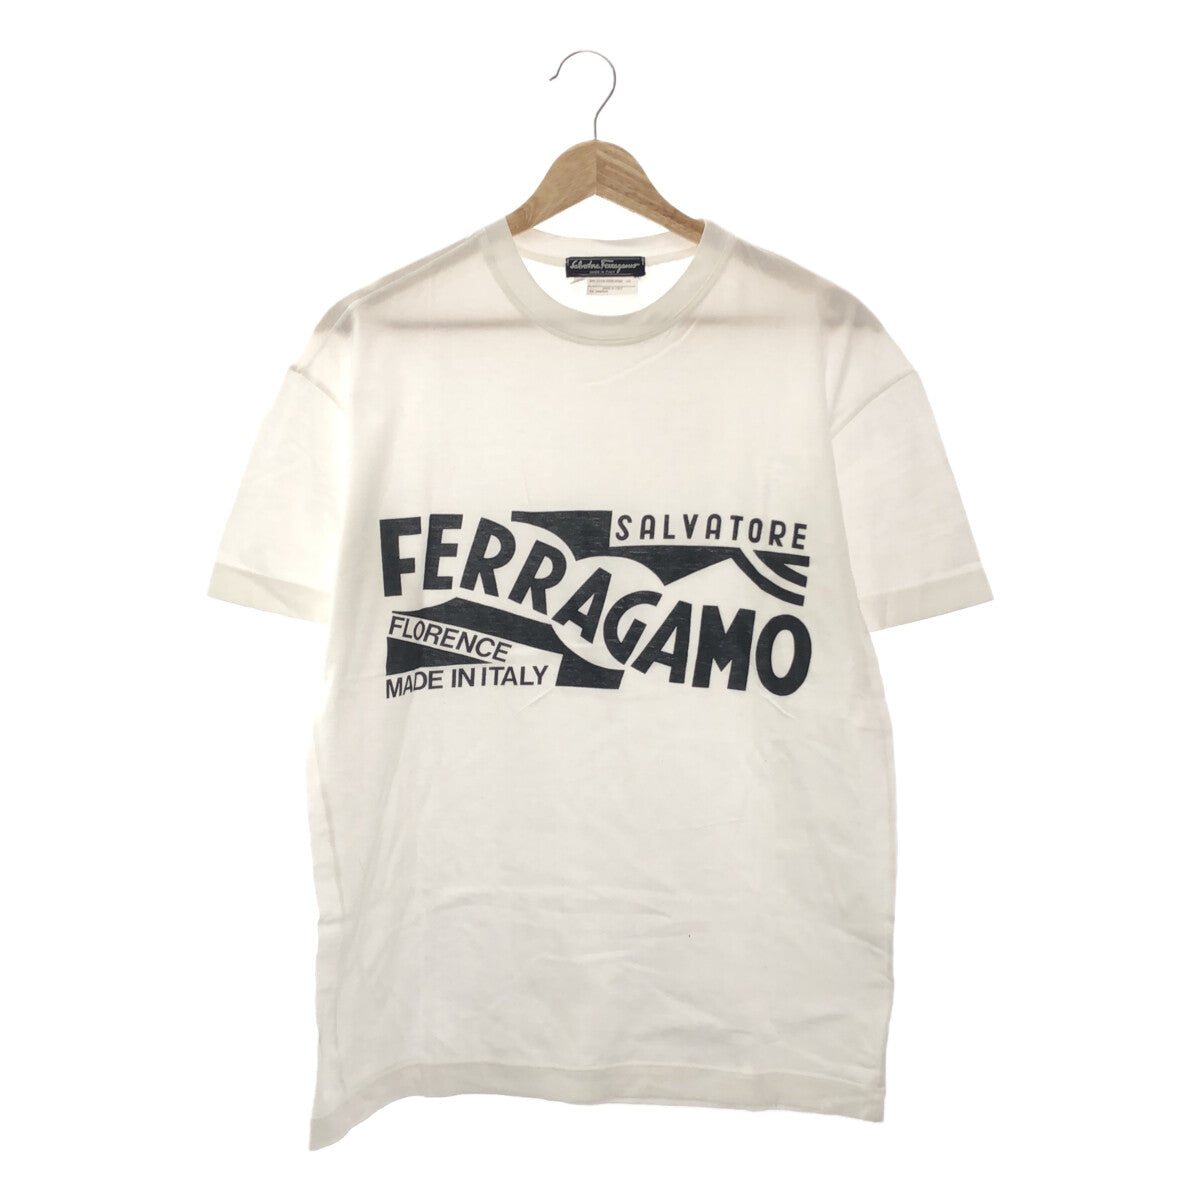 ご注意くださいサルヴァトーレフェラガモ SALVATORE FERRAGAMO Tシャツ